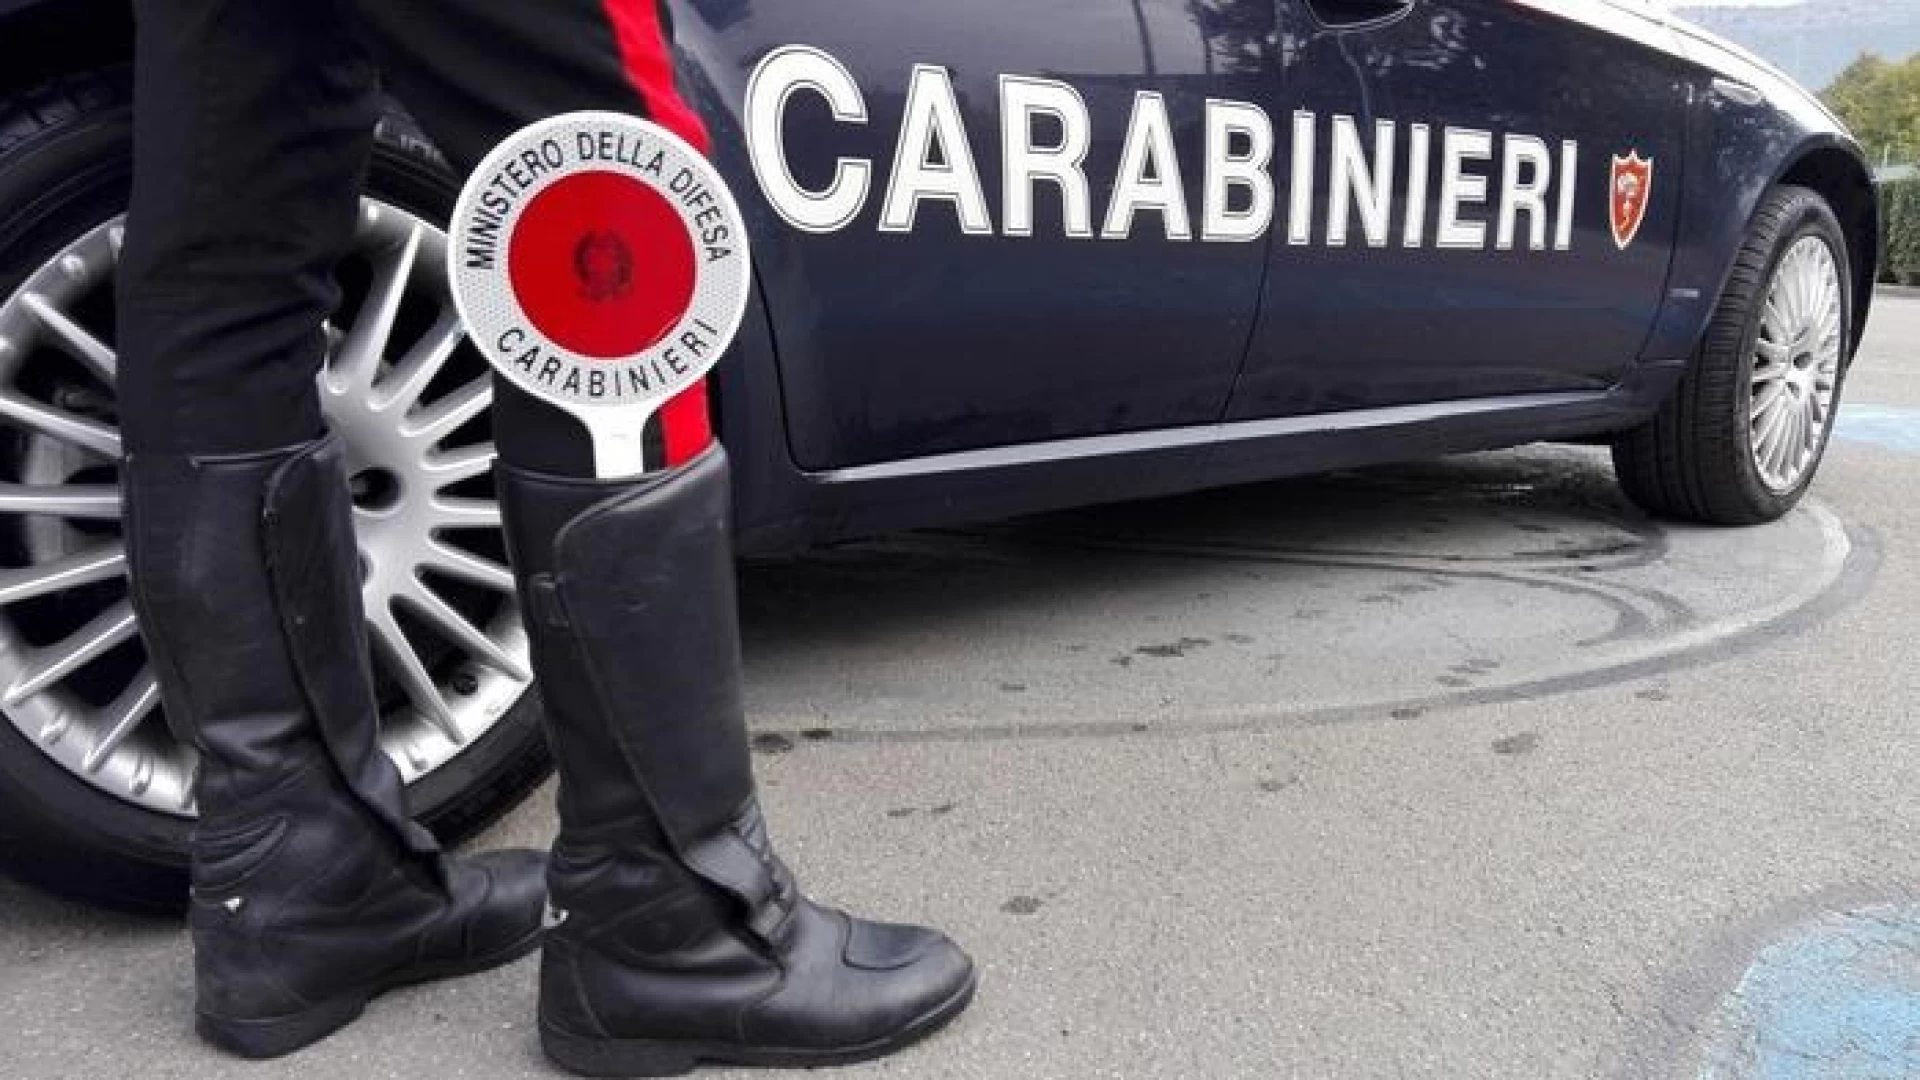 Avezzano: intensificazione dei controlli antidroga dei Carabinieri. Arrestata una persona